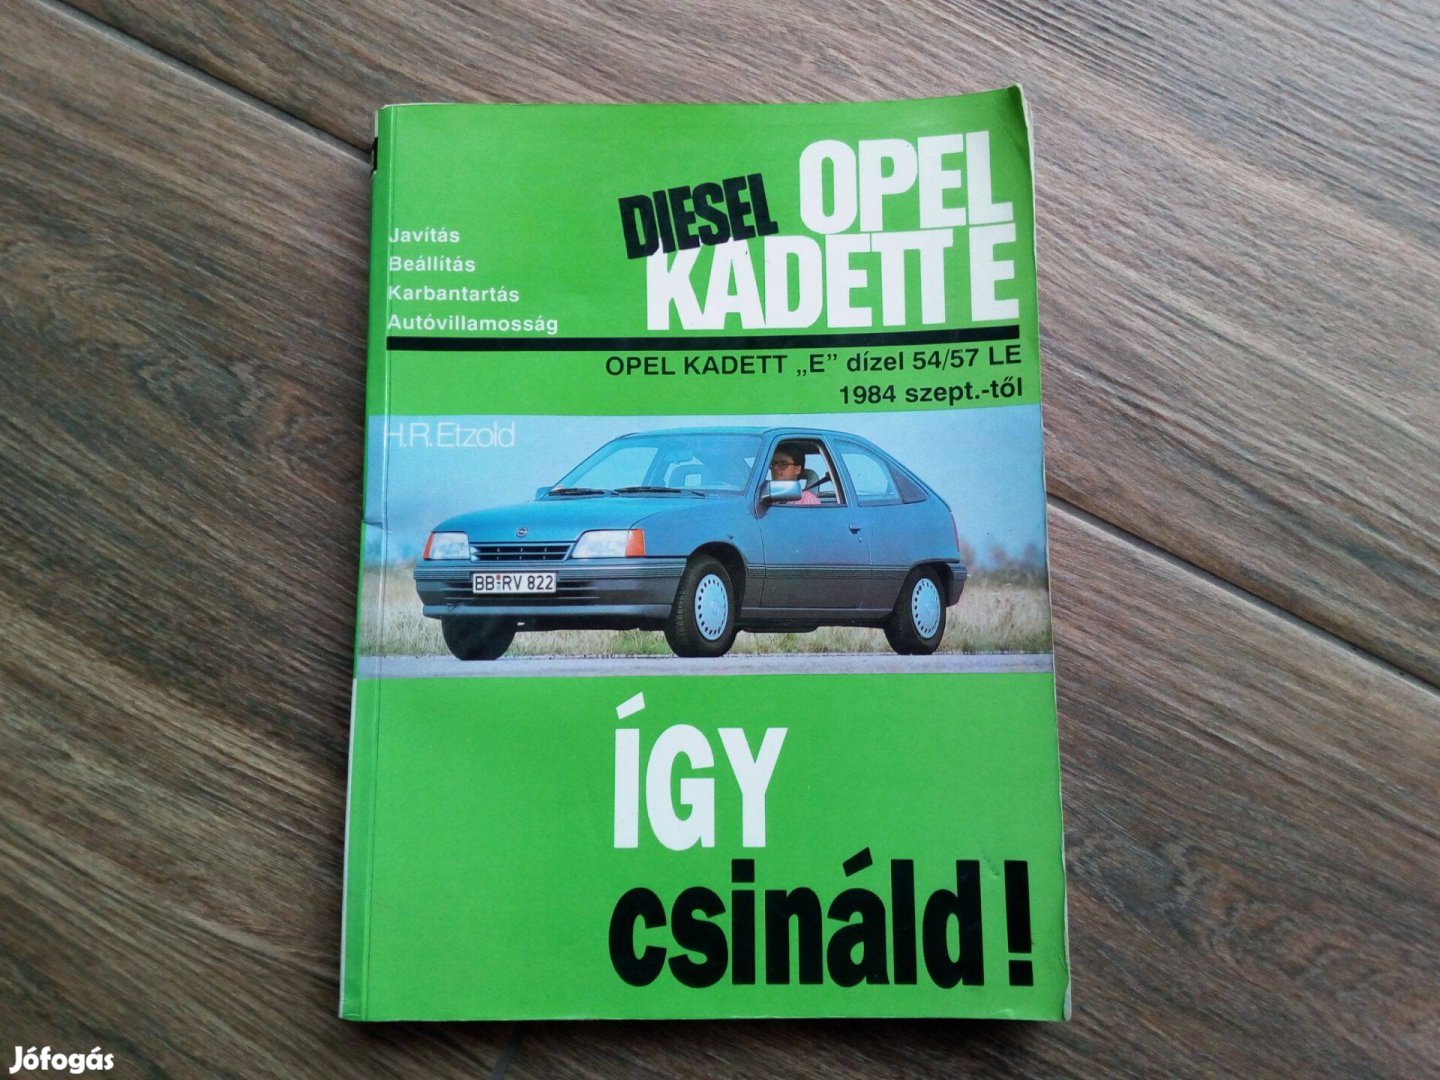 Opel Kadett E Dízel javítási karbantartási . Így csináld